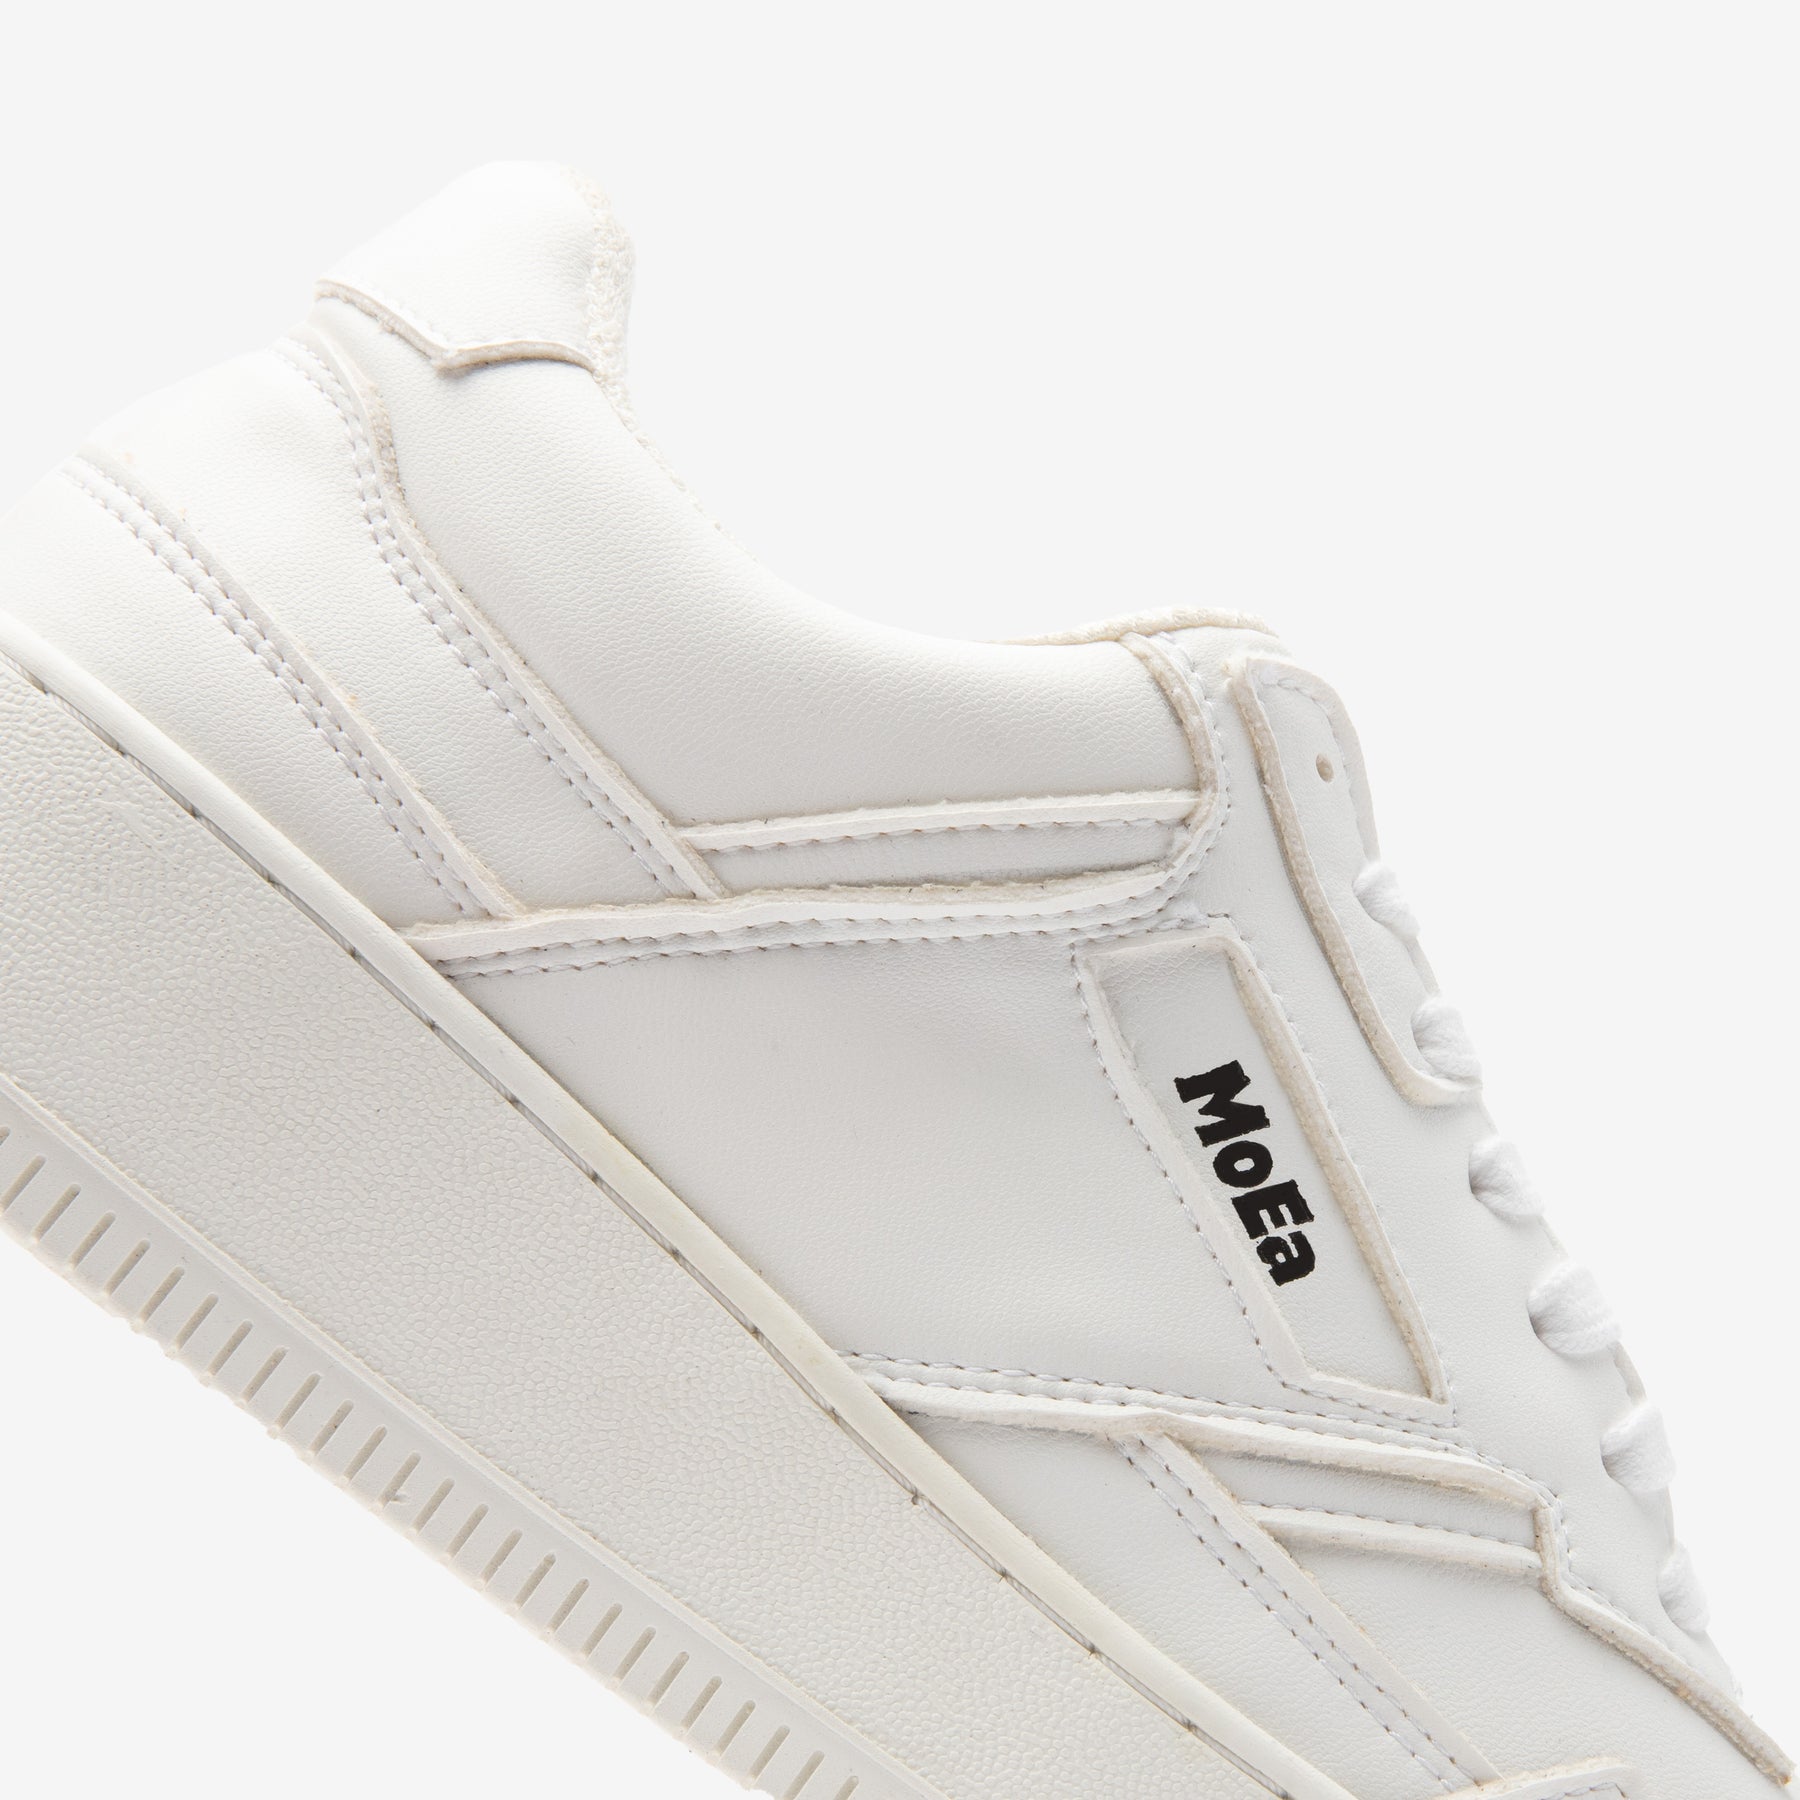 MoEa // Sneaker // Gen1 Grapes Full White